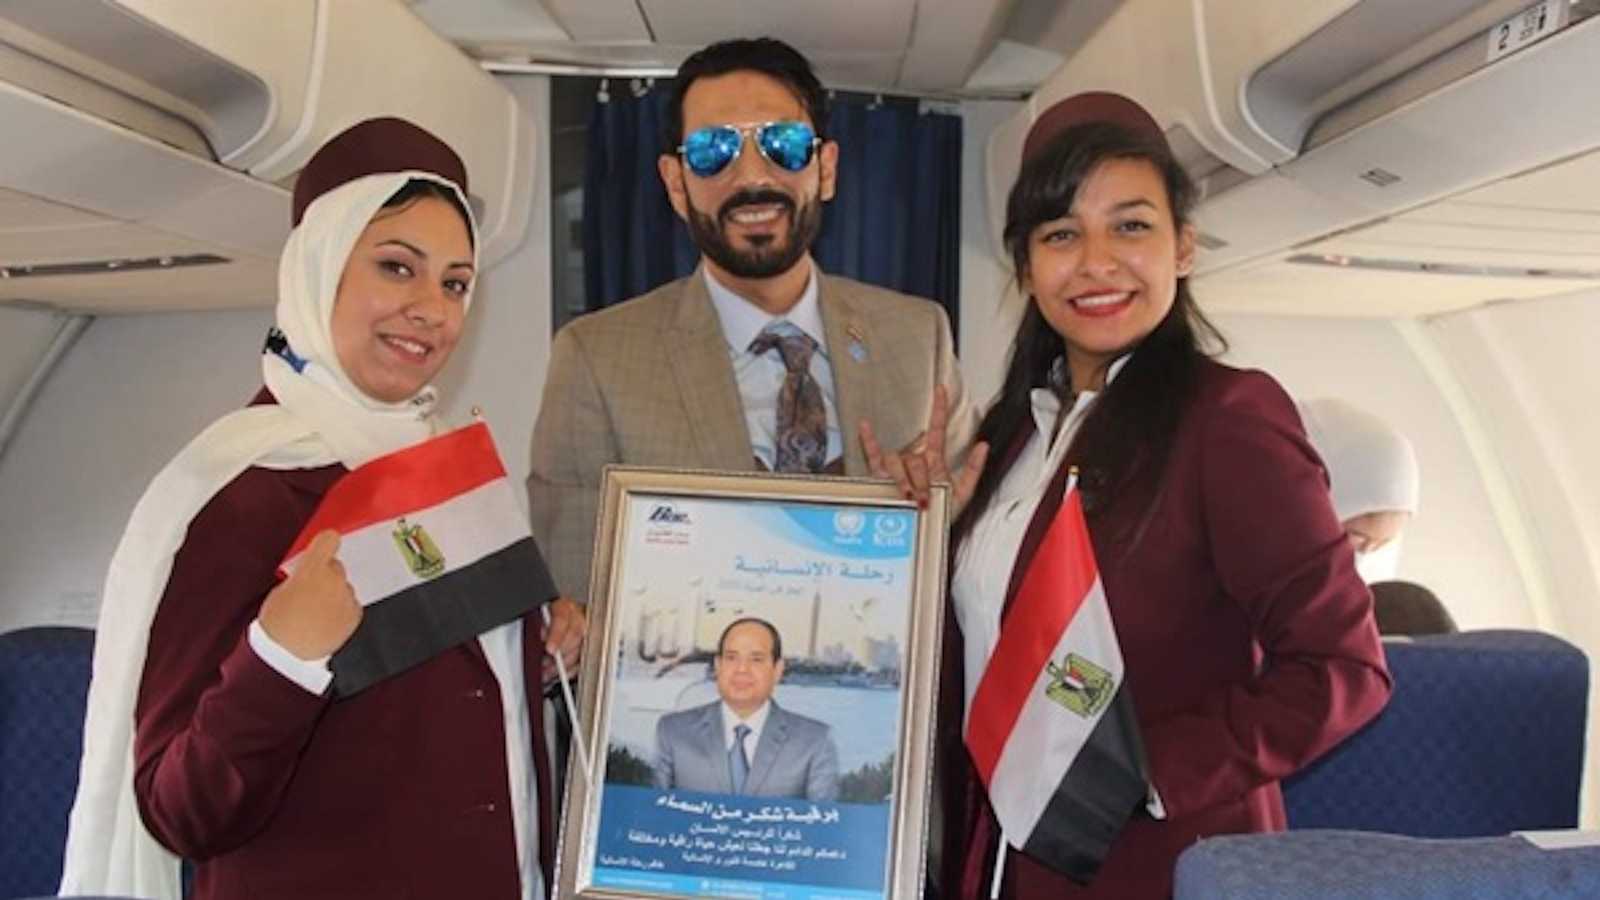 埃及首例听障空姐飞往喀土穆的工作航班